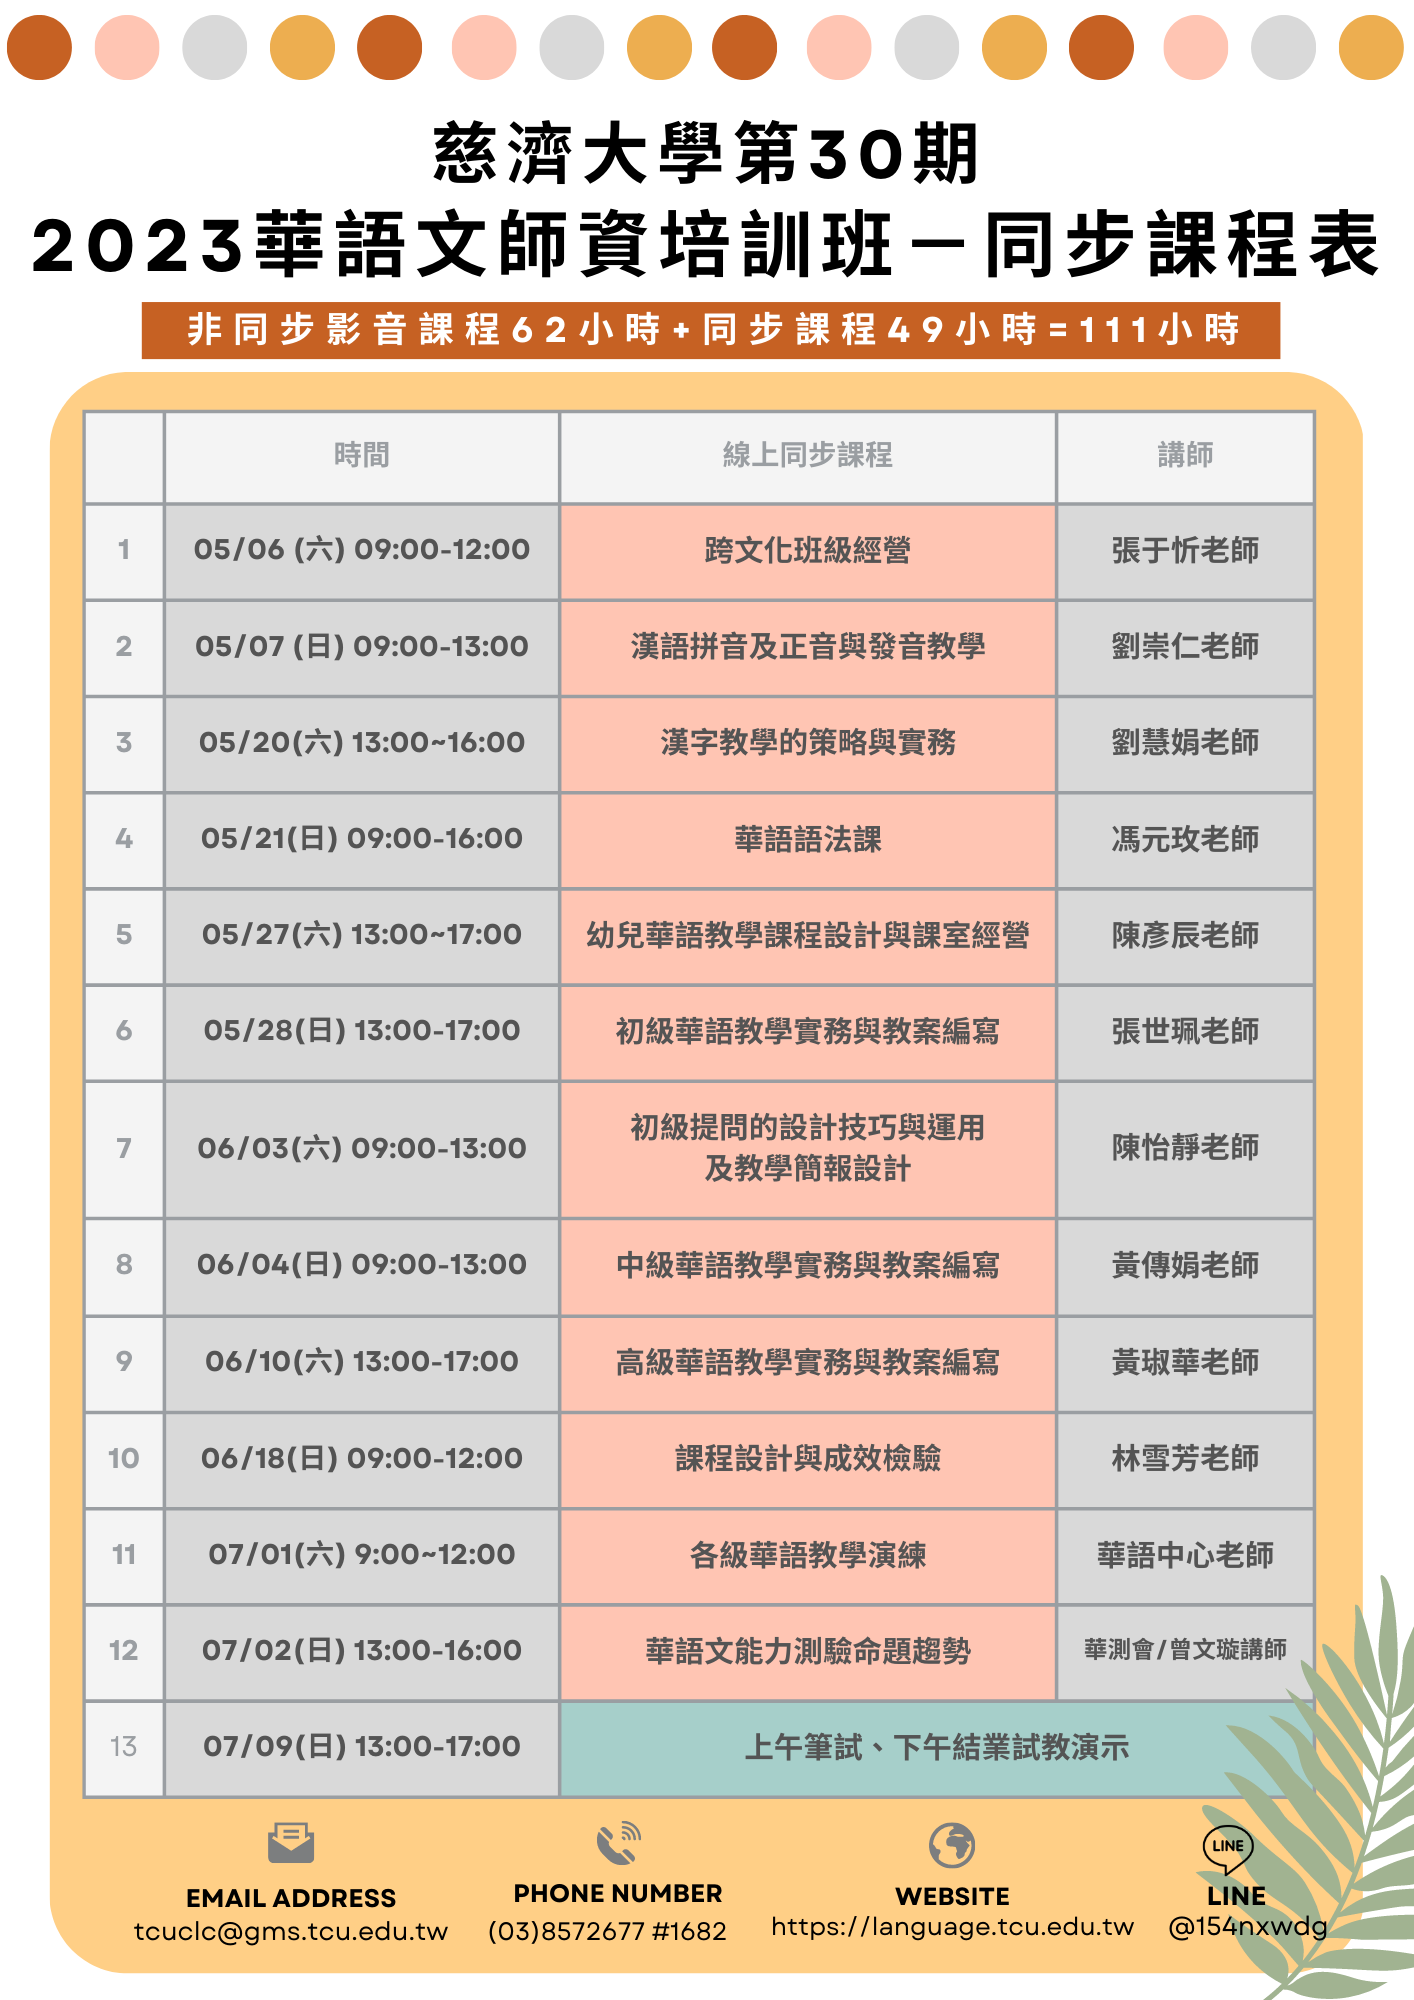 「2023華語文師資培訓班-線上課程」課程表